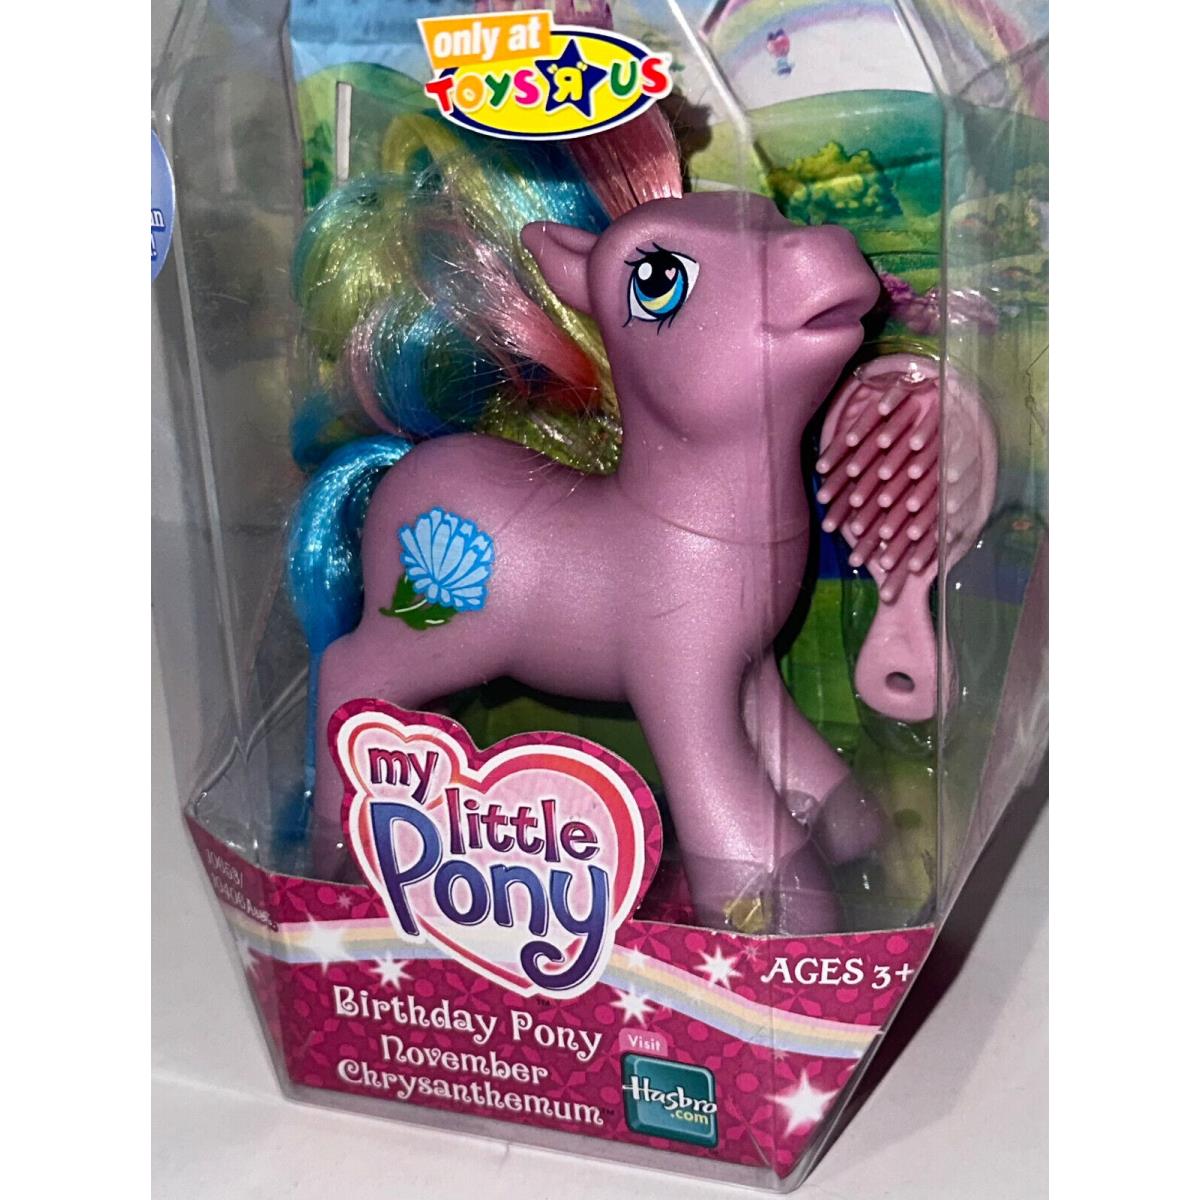 My Little Pony G3 November Chrysanthemum Birthday Pony Toys R US Exclusive